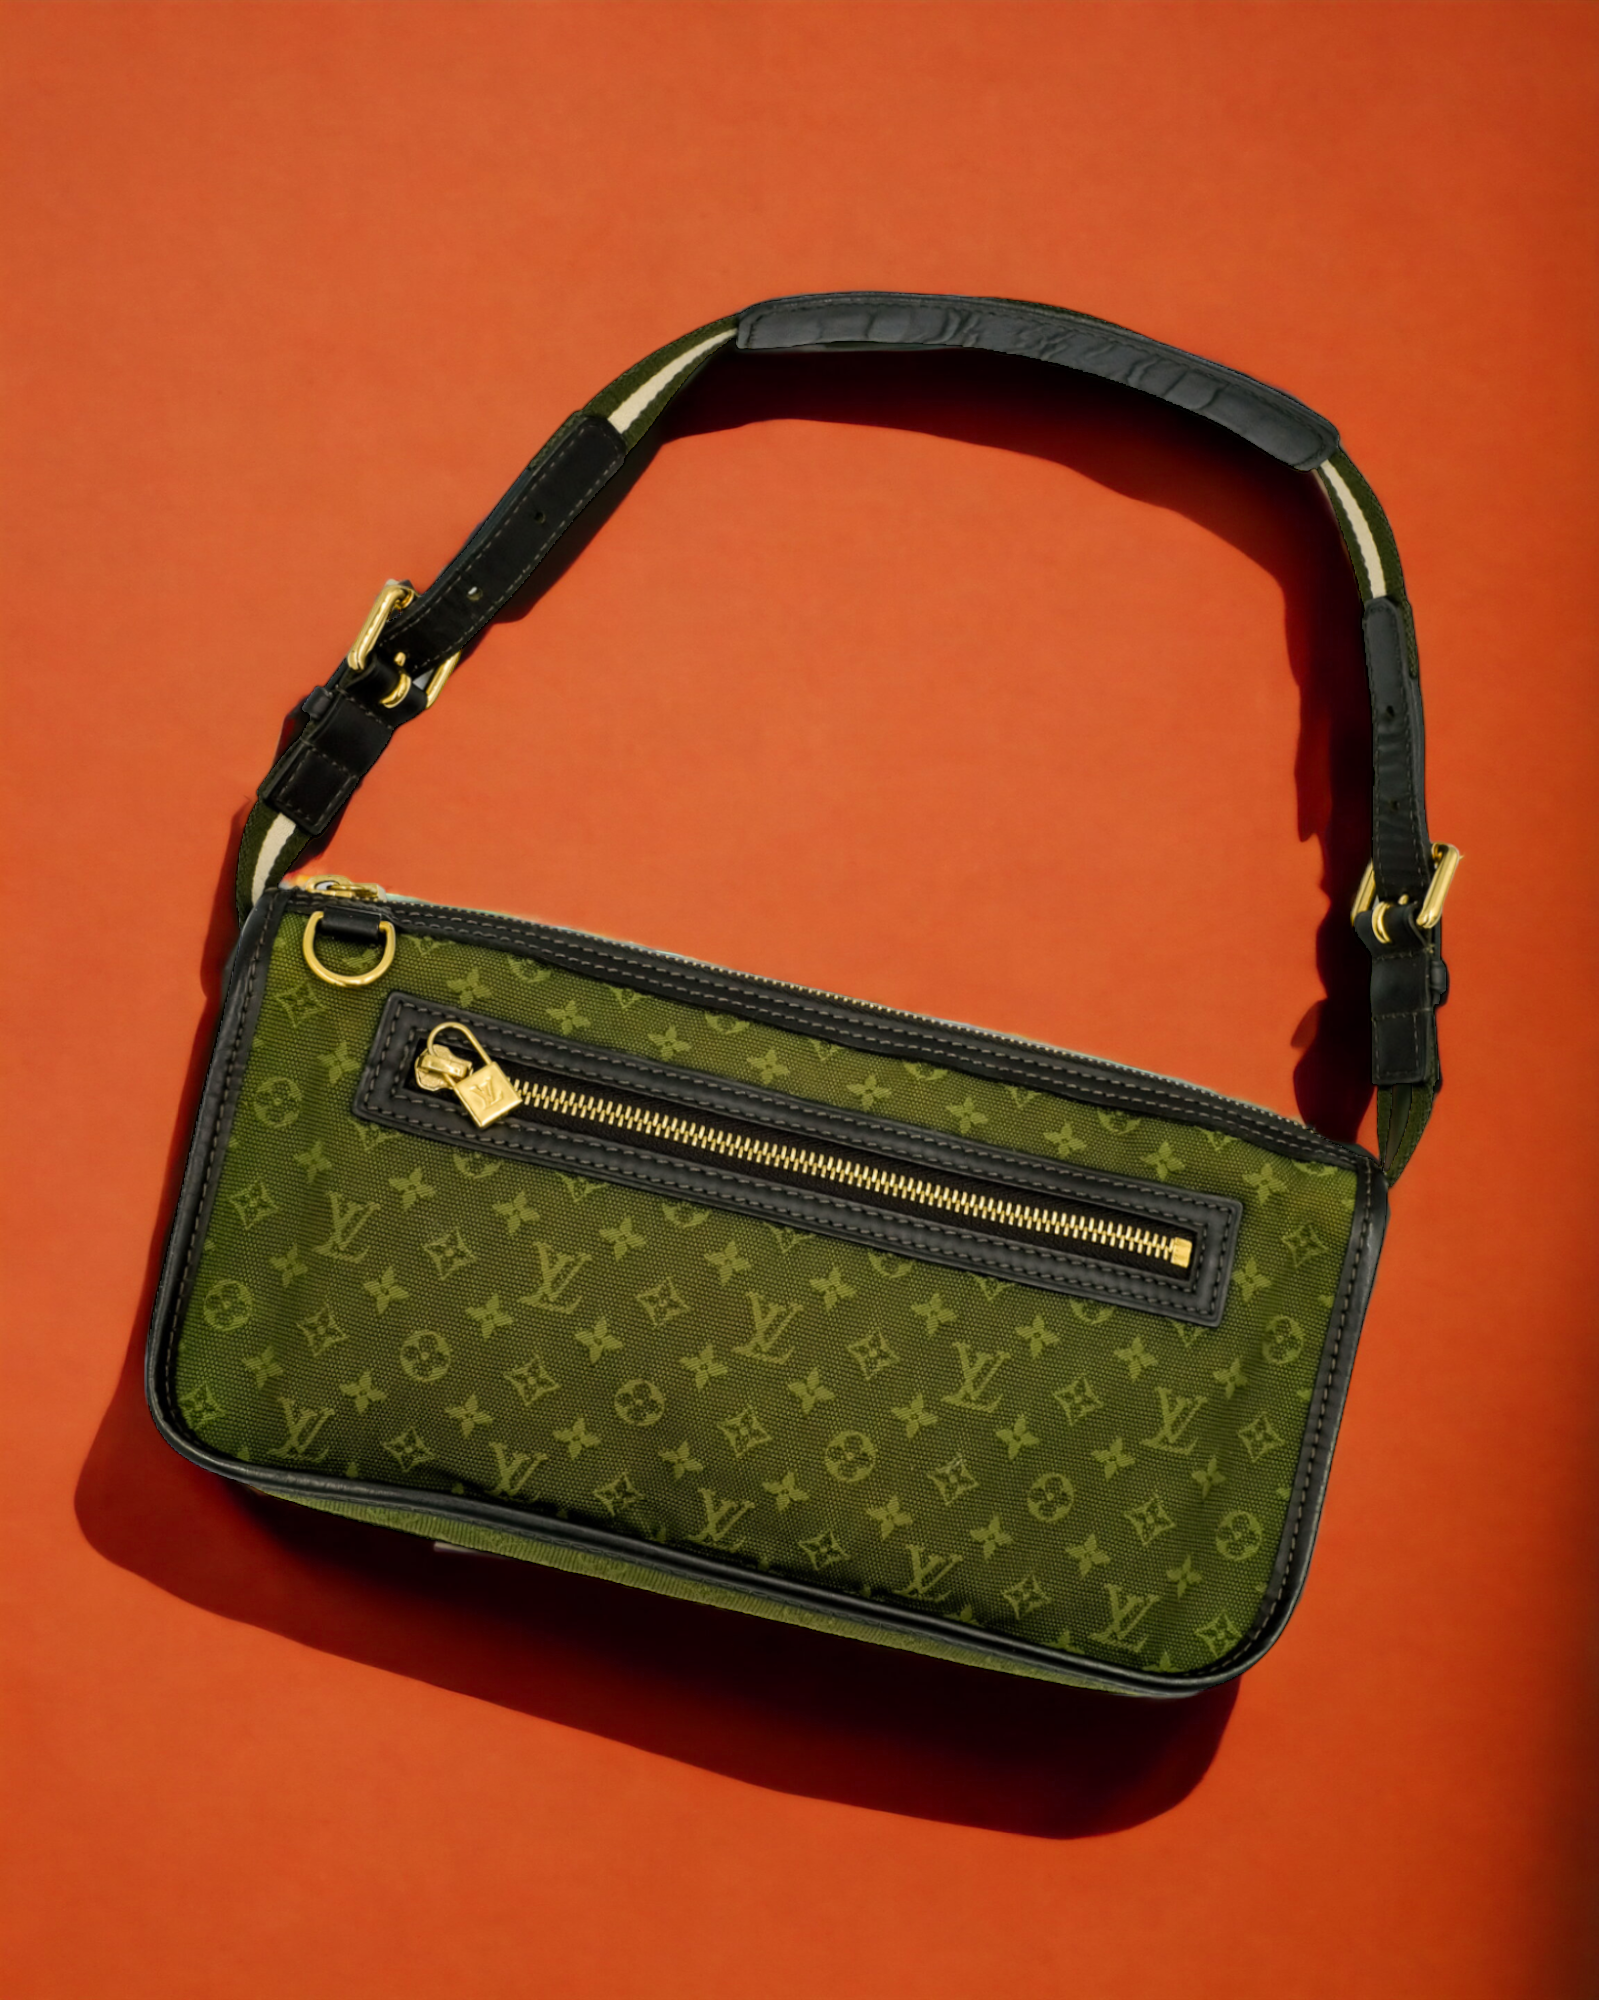 My Purse Love - Louis Vuitton Mini Lin Sac Kathleen Bag